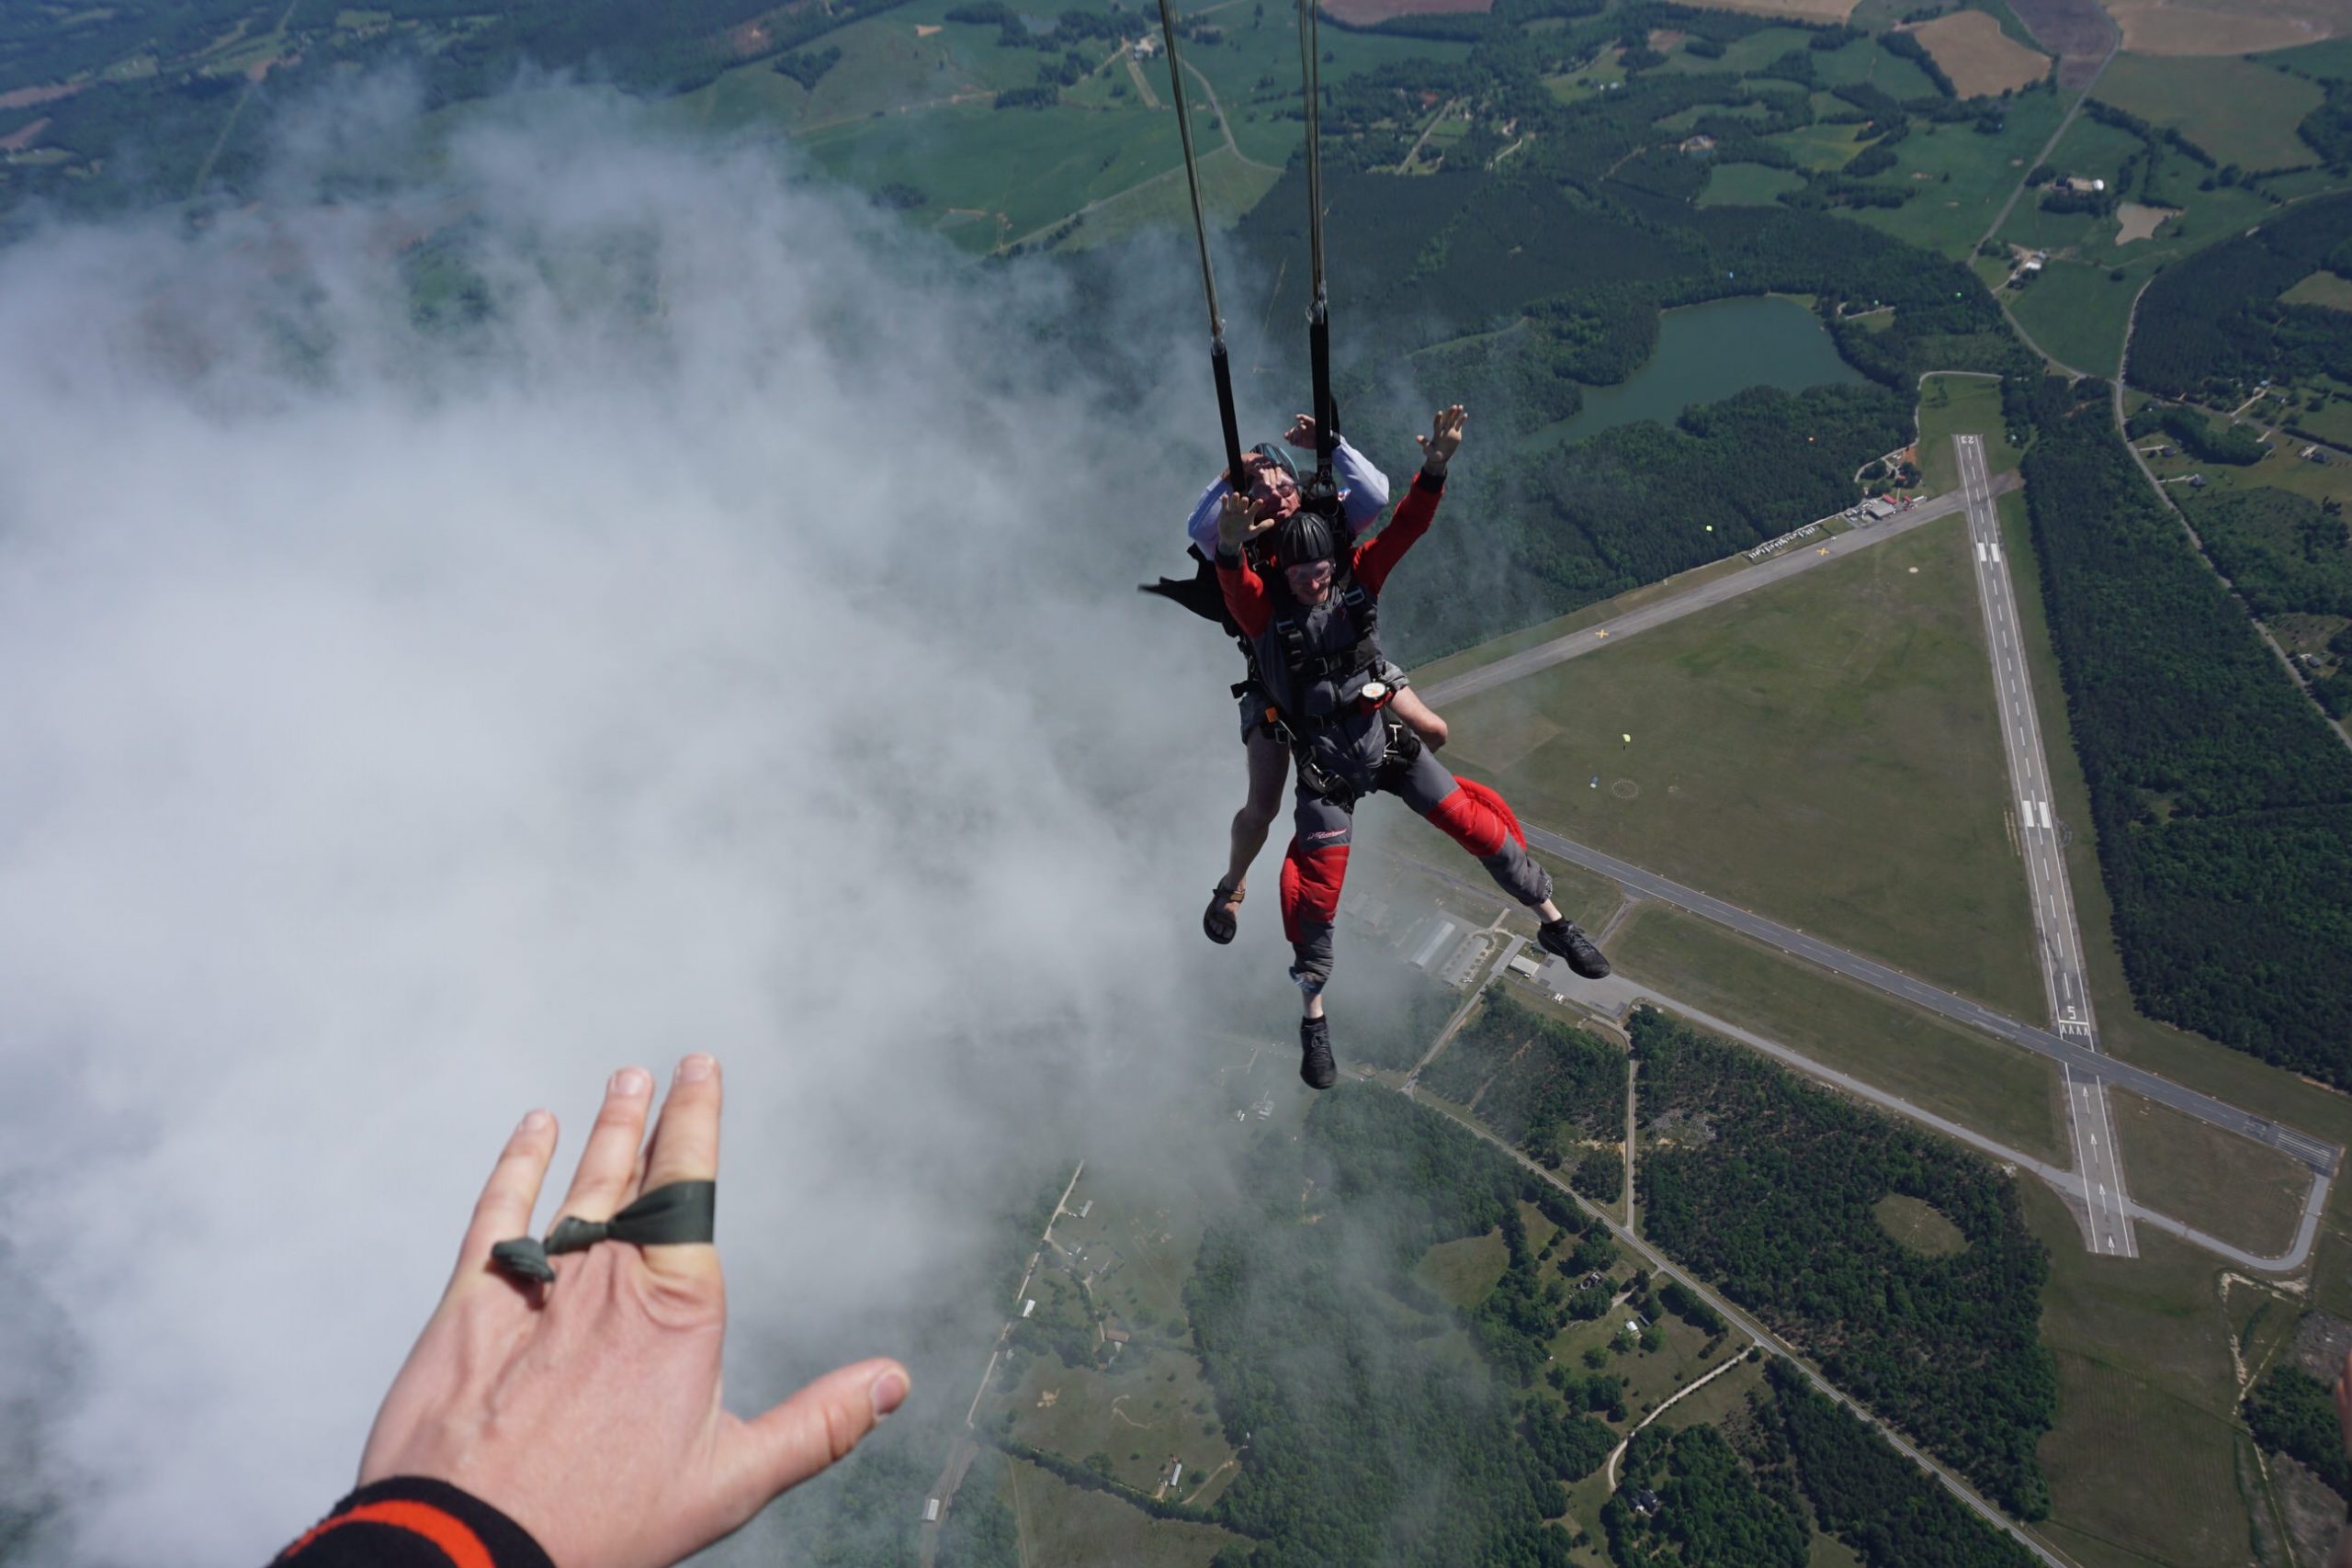 Tandem skydiving at Skydive Carolina